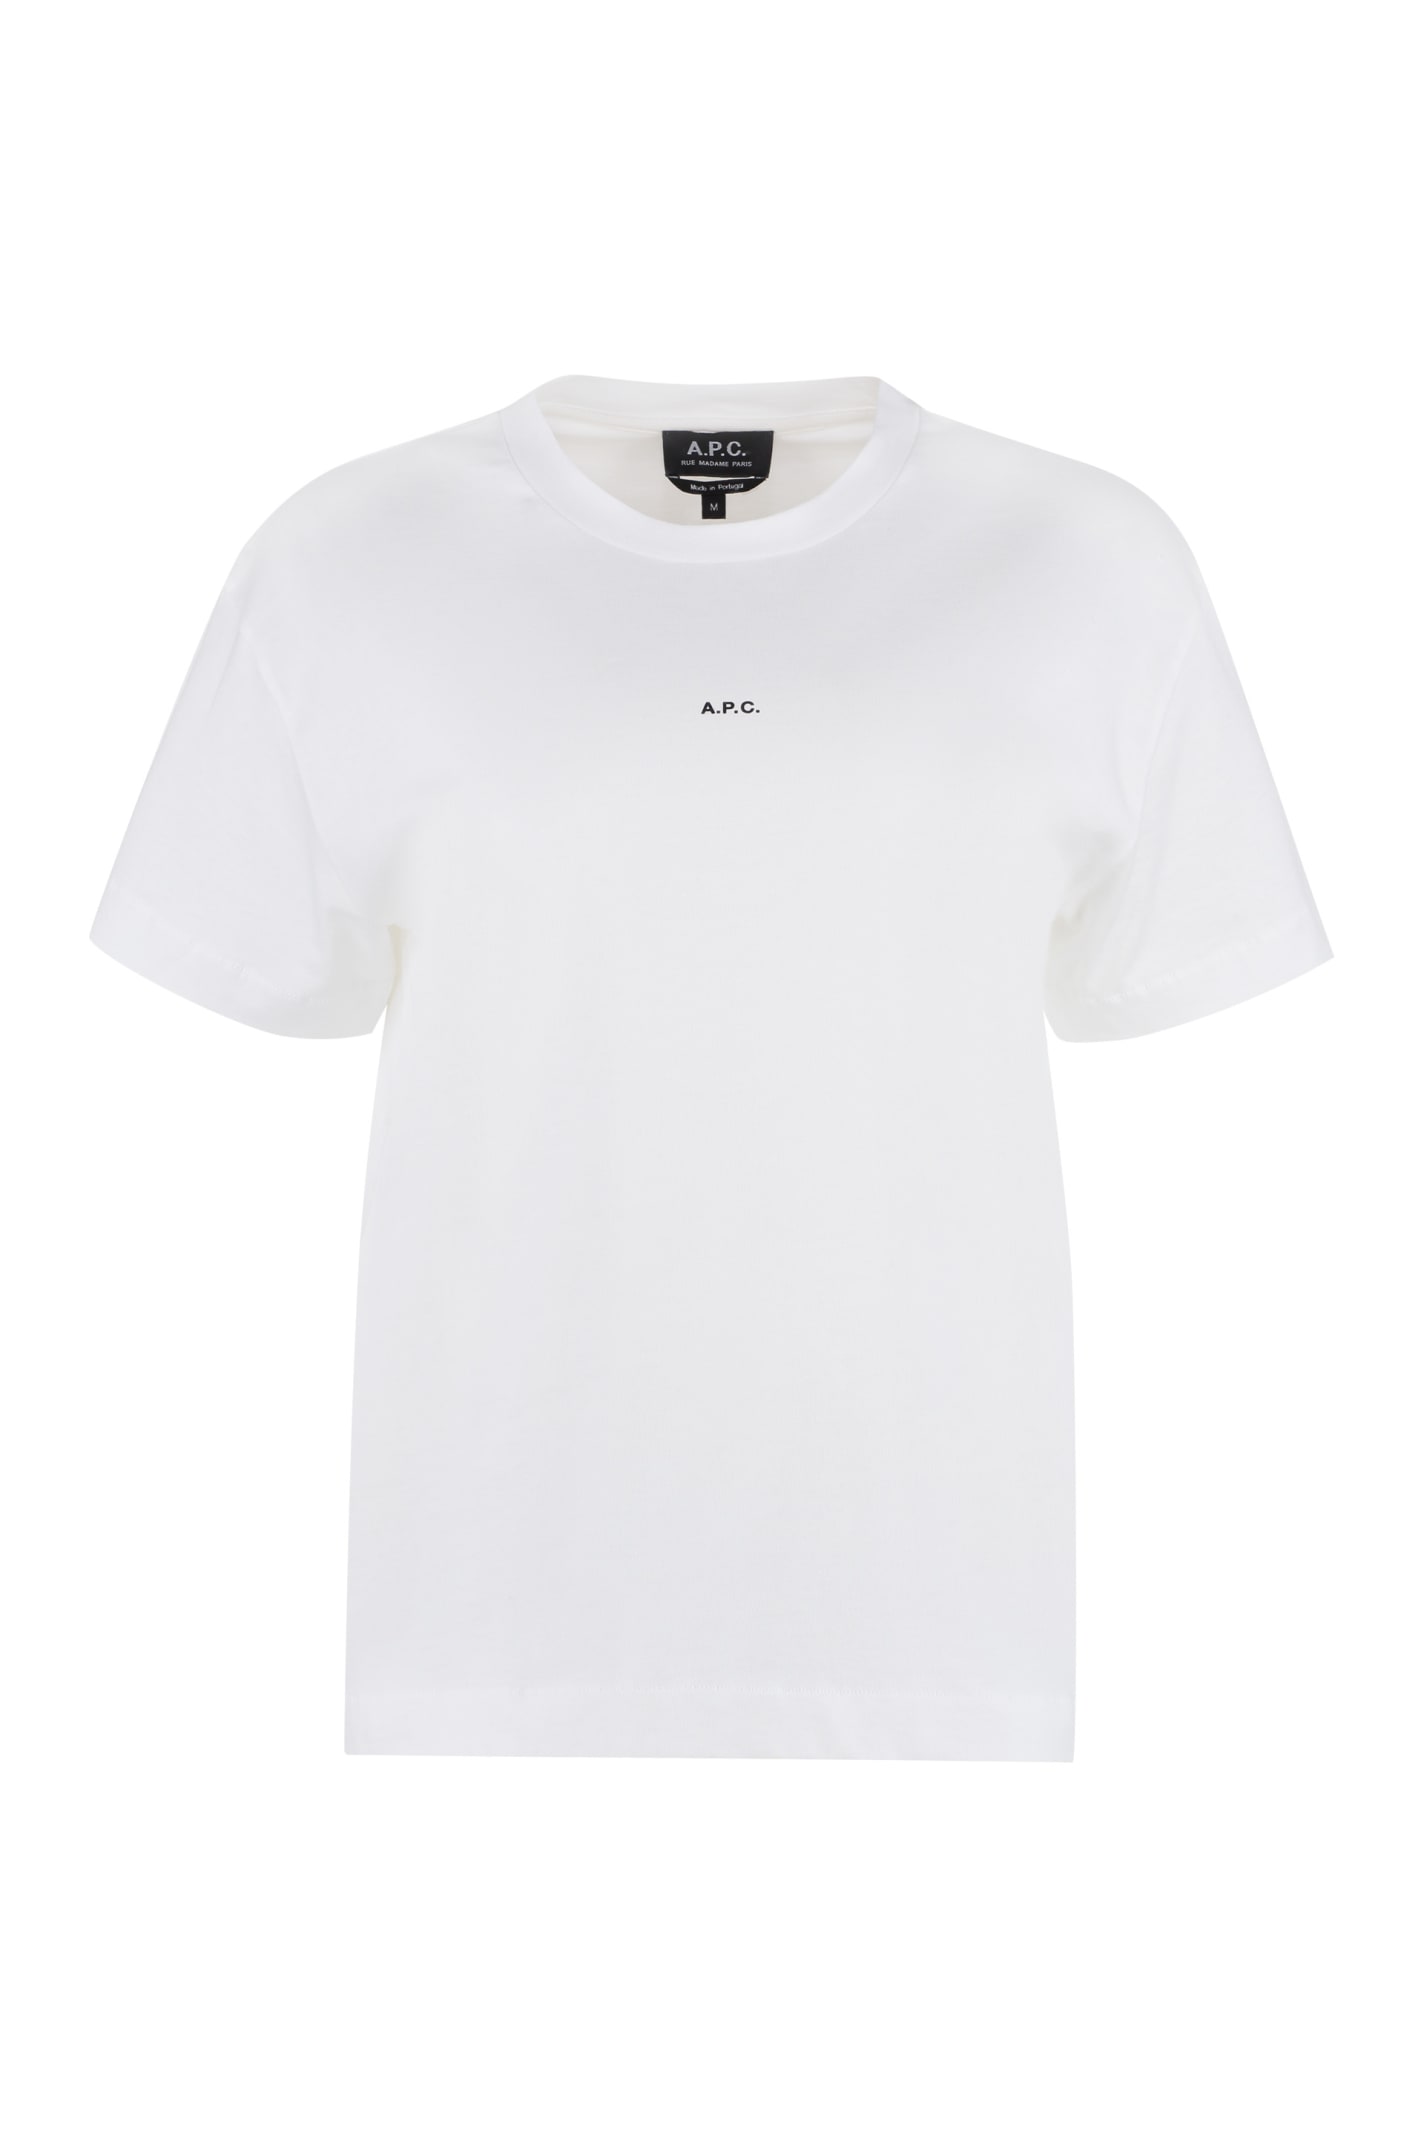 Cotton Crew-neck T-shirt